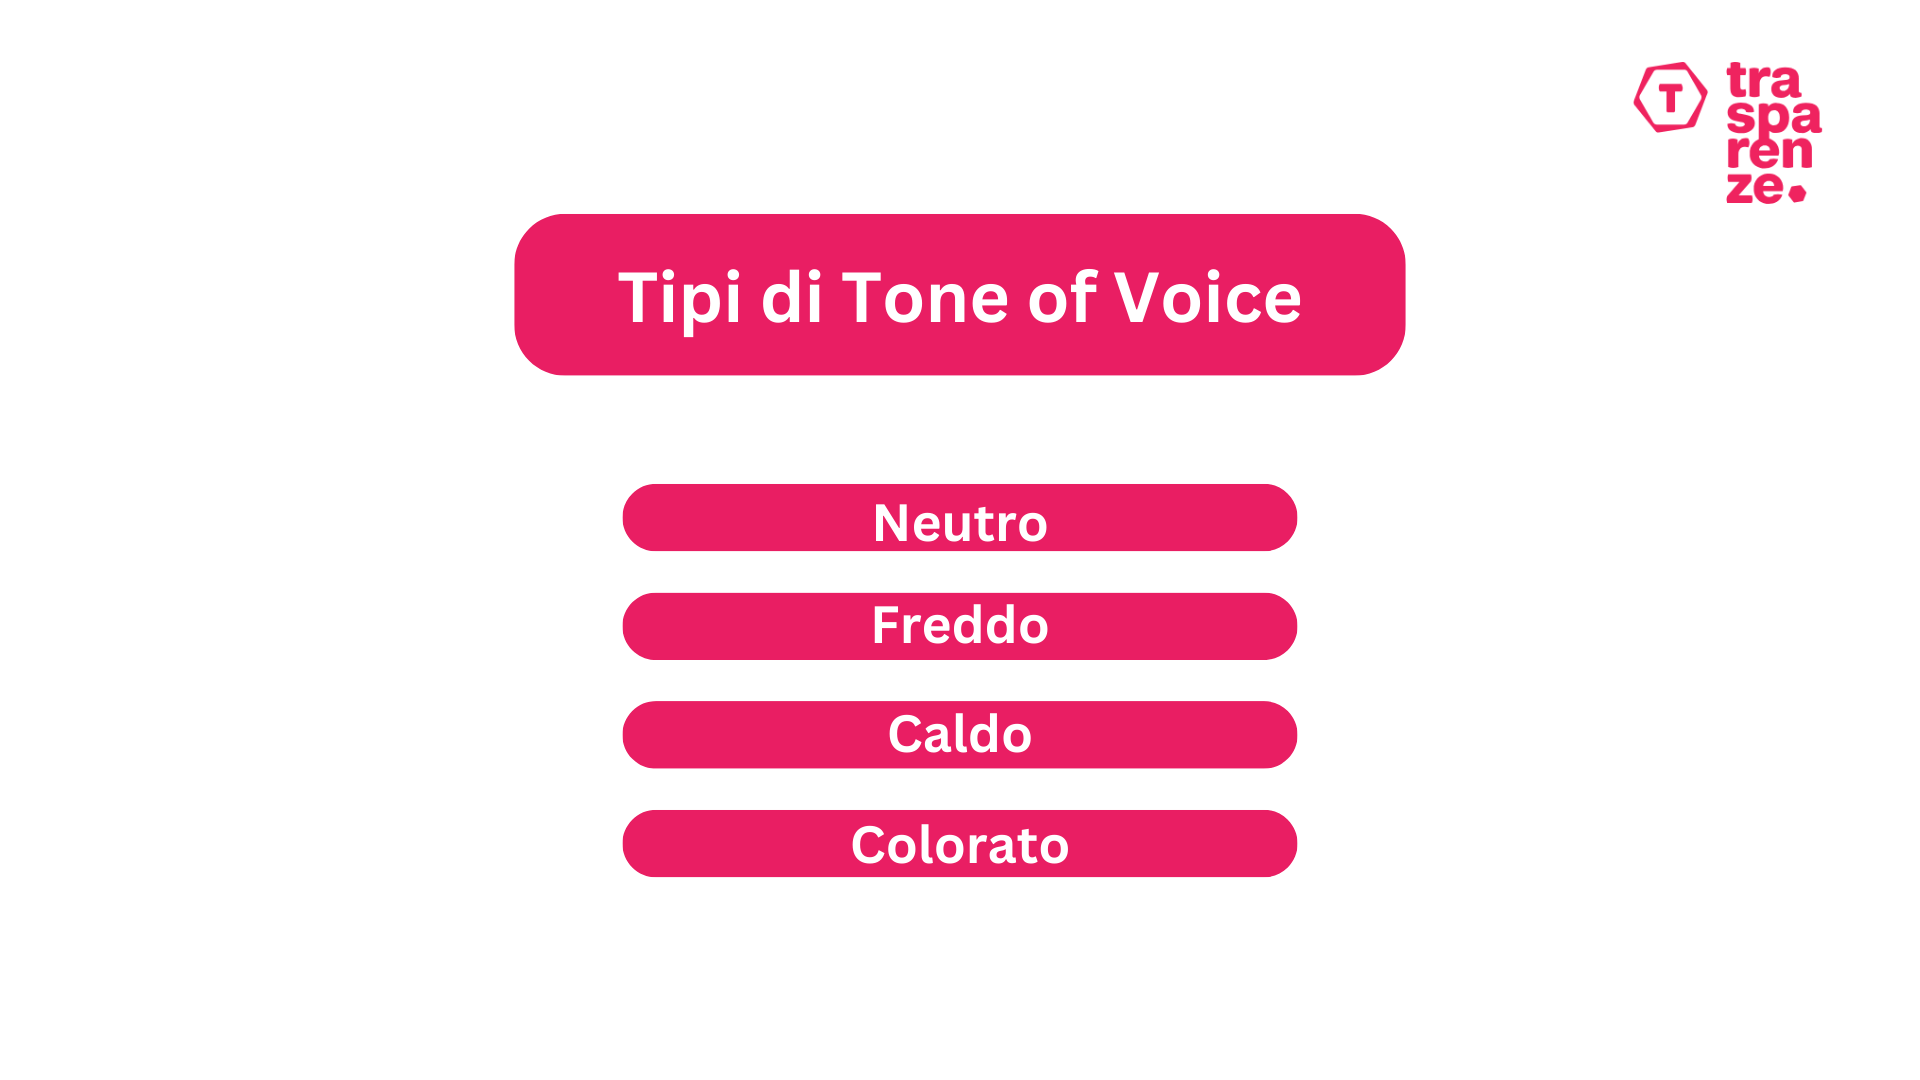 Tipologie di tone of voice: neutro, freddo, caldo, colorato